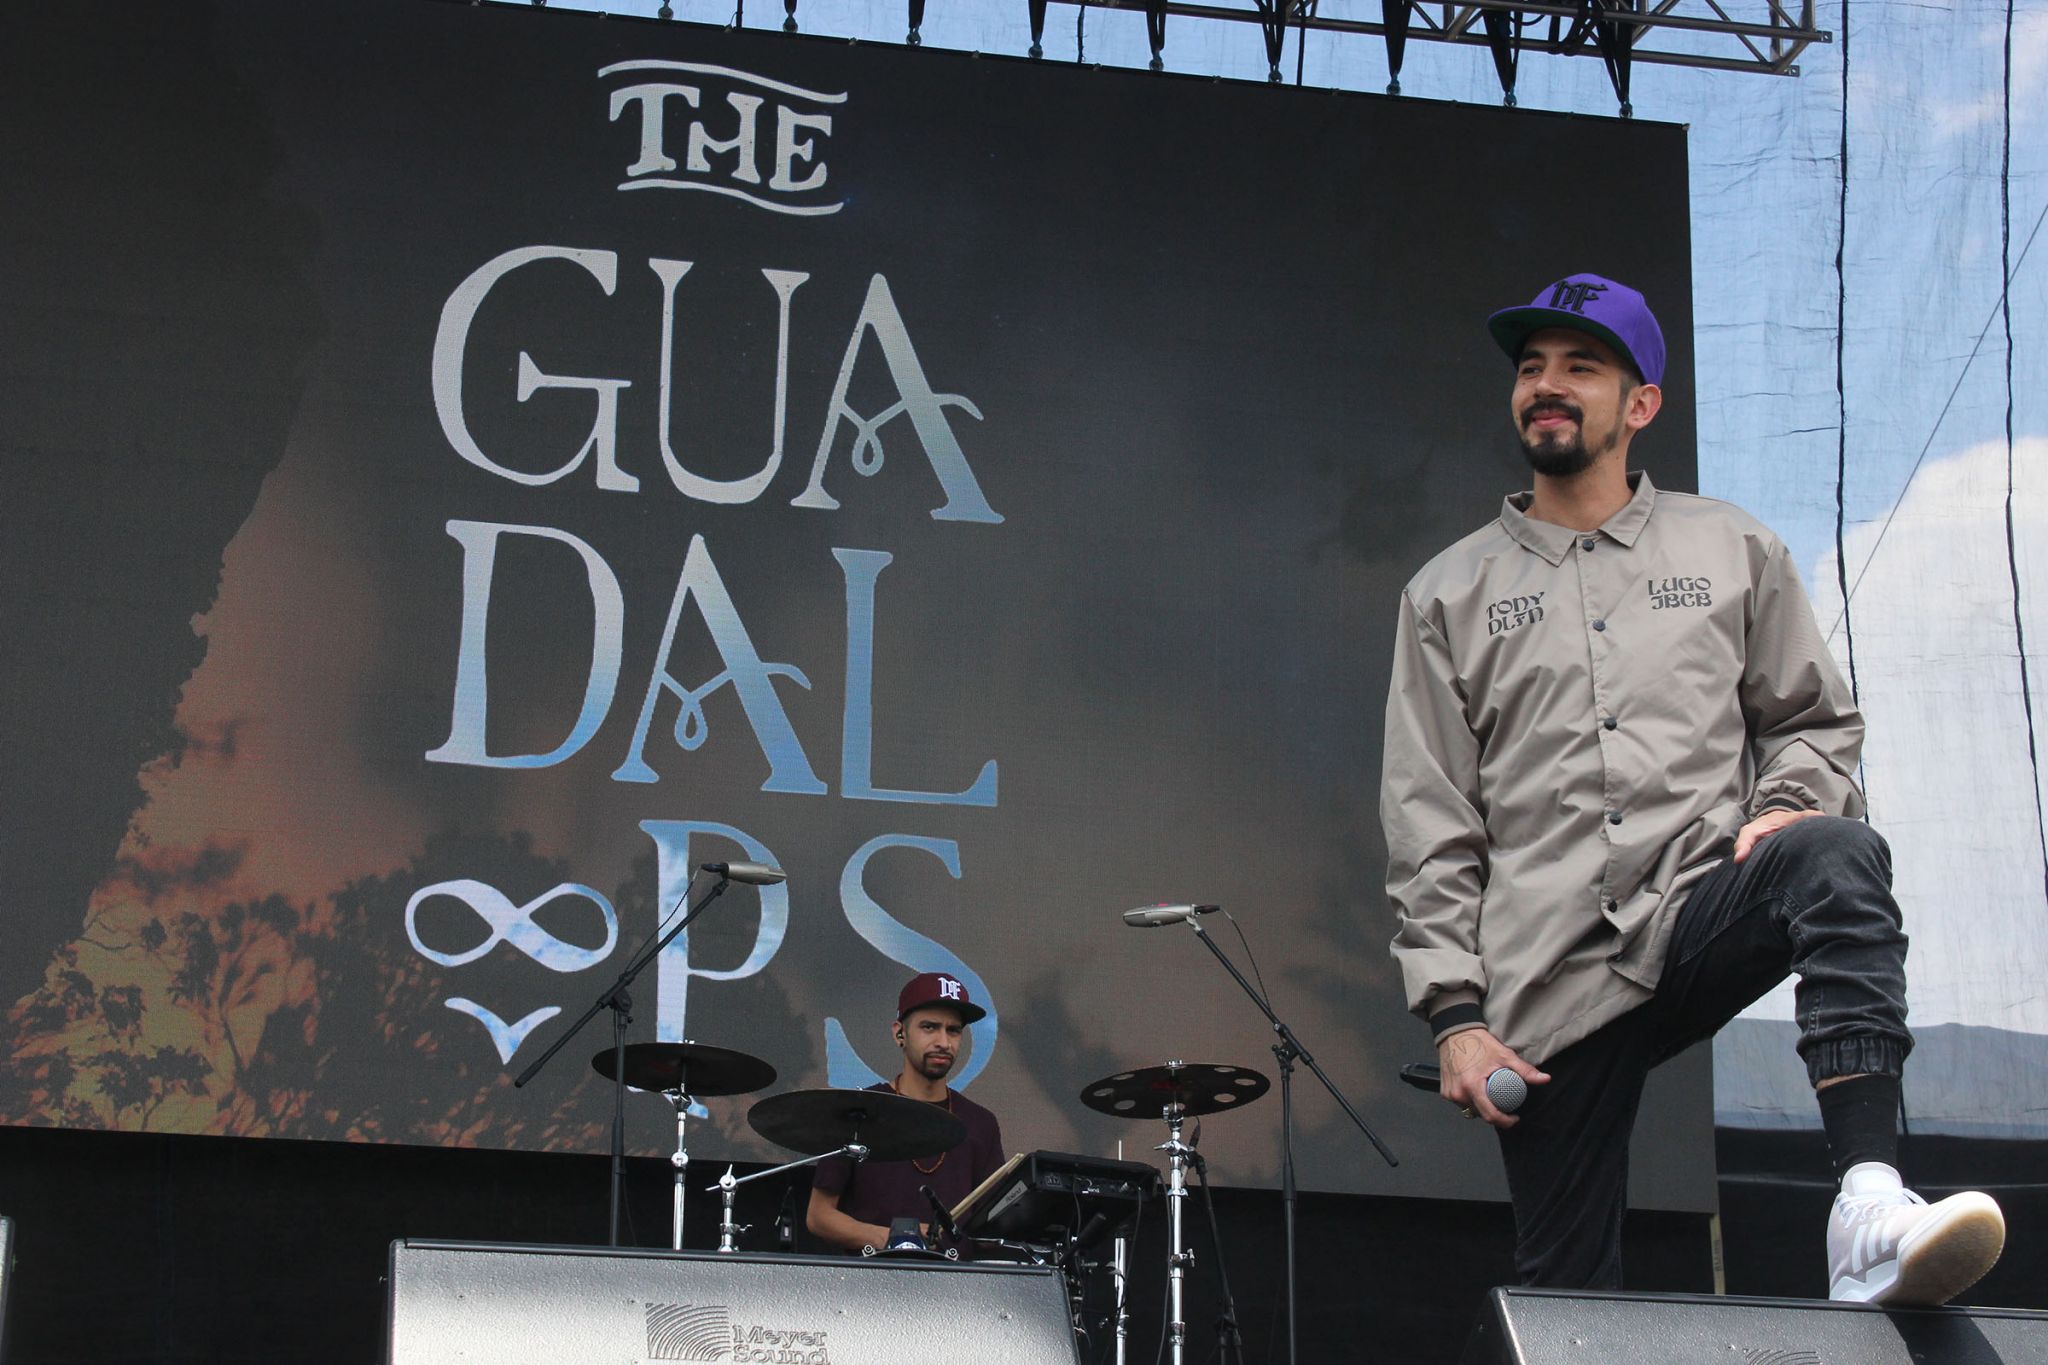 The Guadaloops abriendo escenario en el Vive Latino